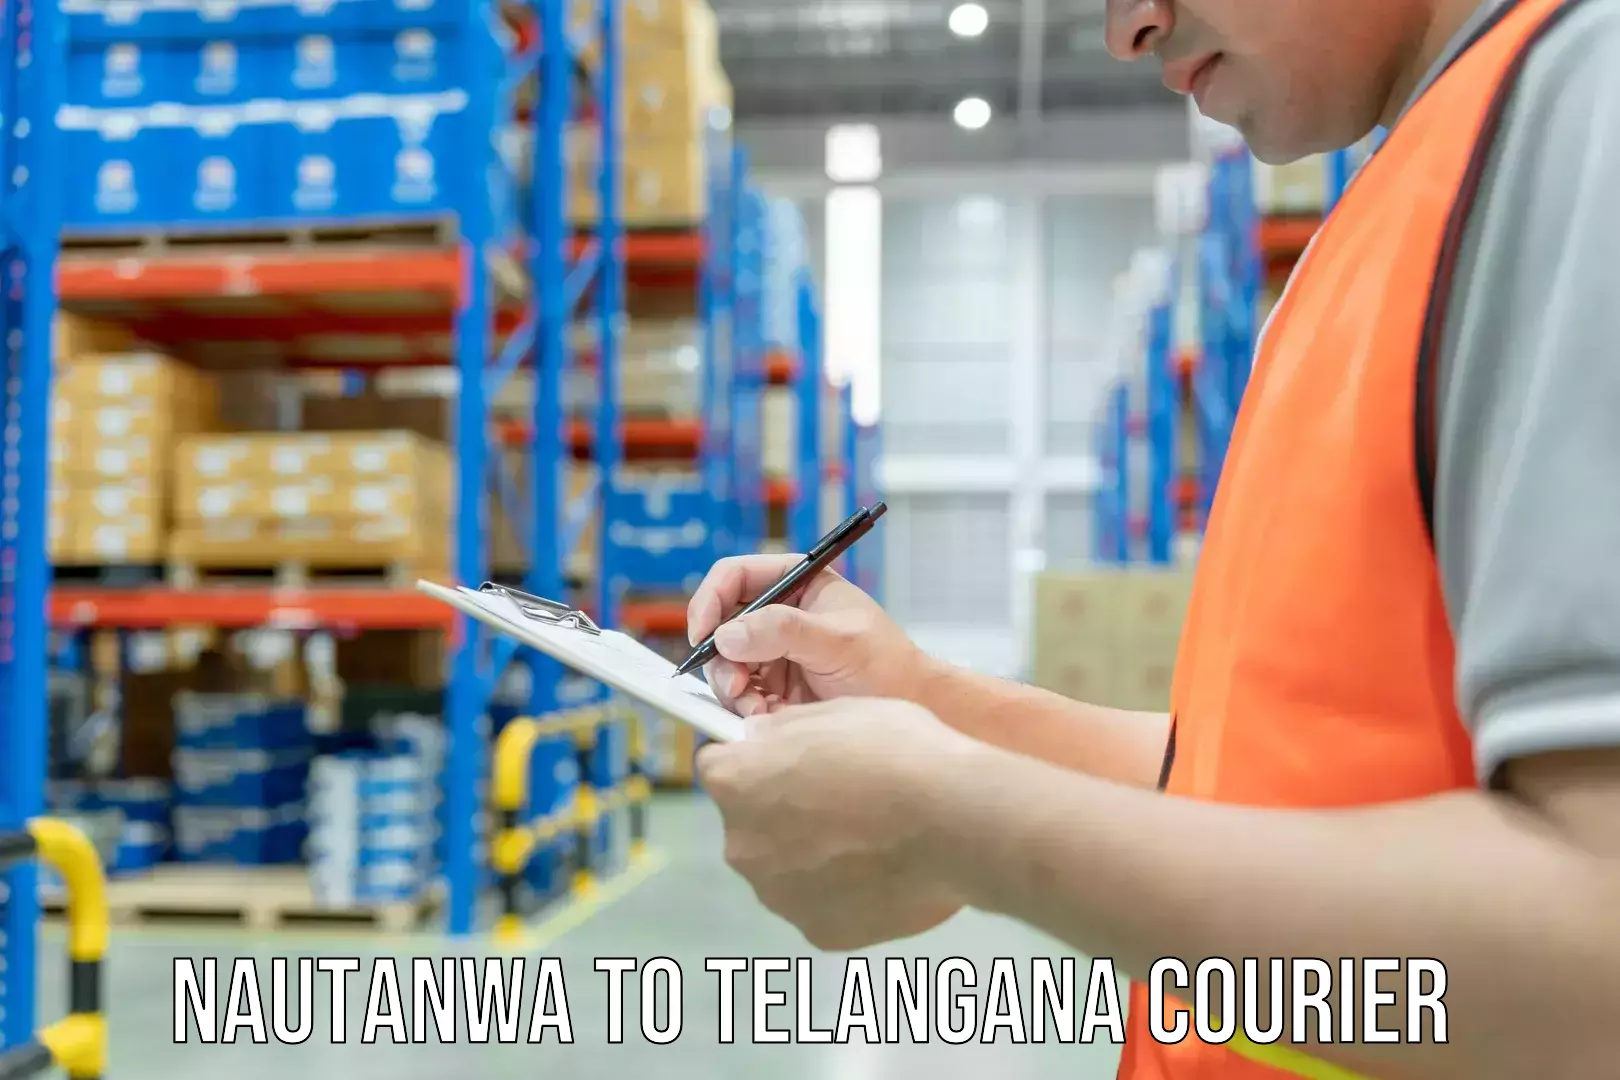 Home goods moving company Nautanwa to Telangana